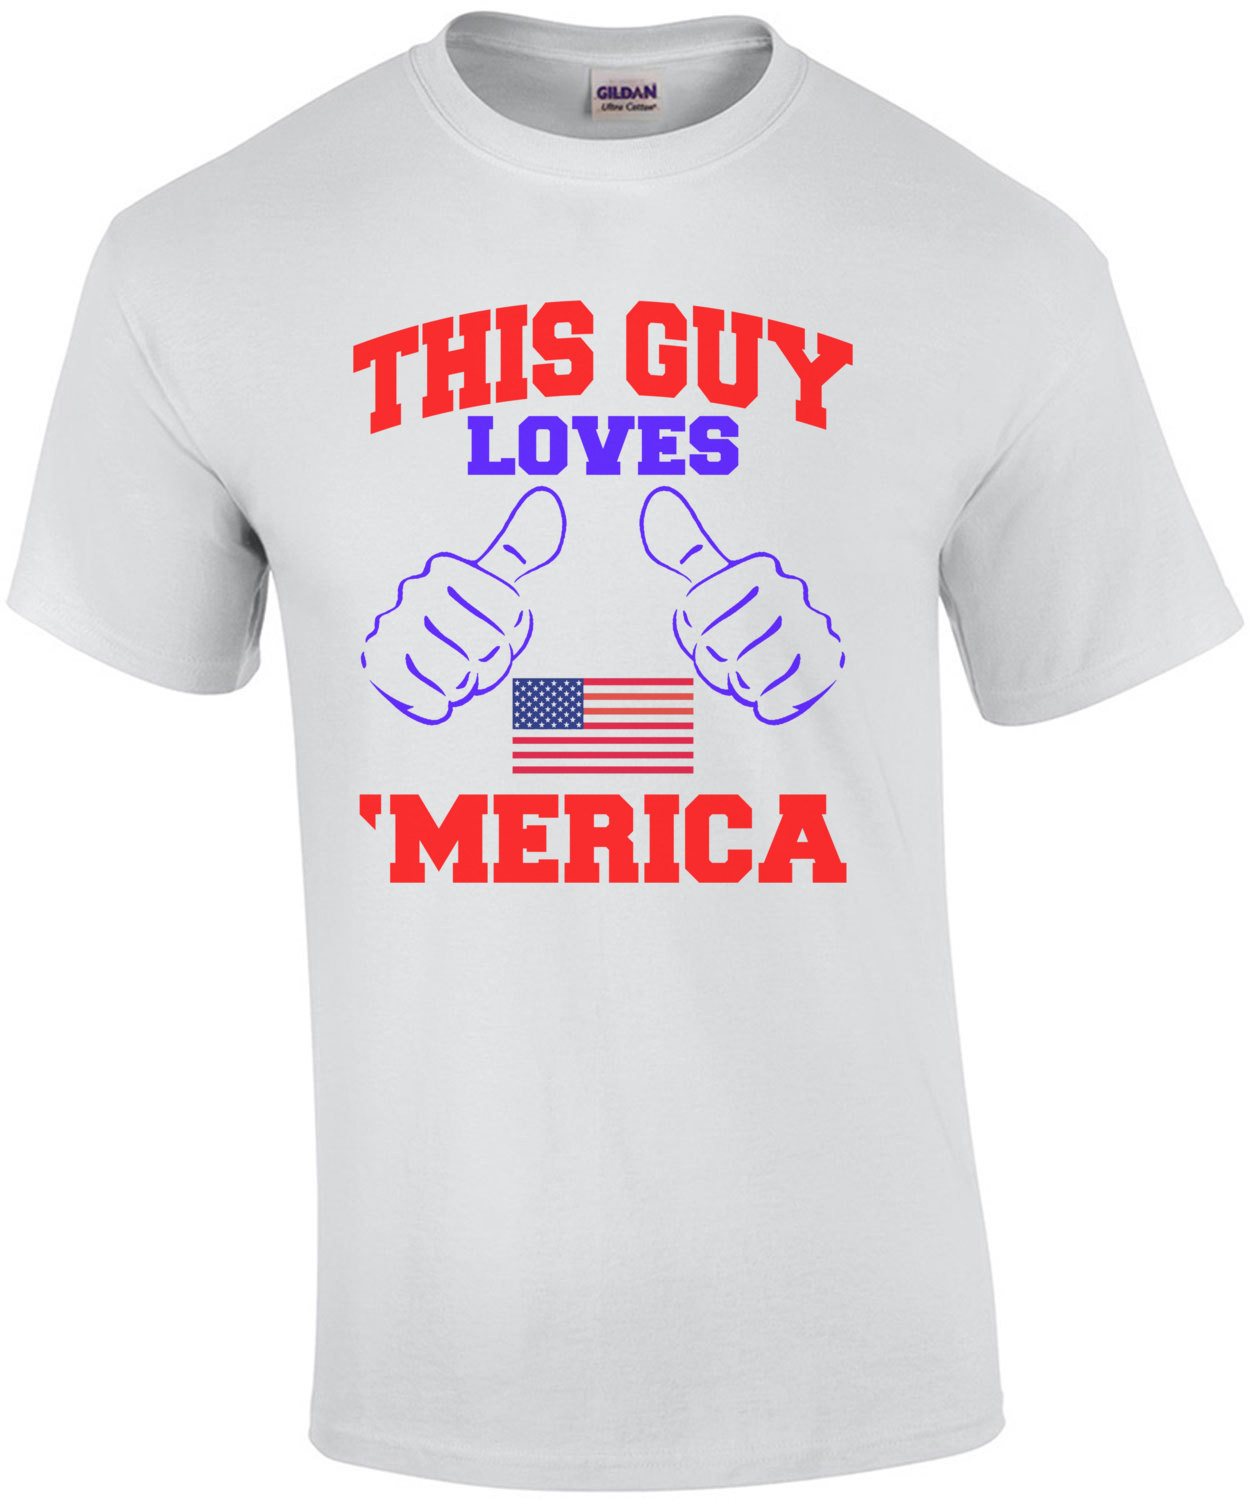 This Guy Loves Merica T-Shirt